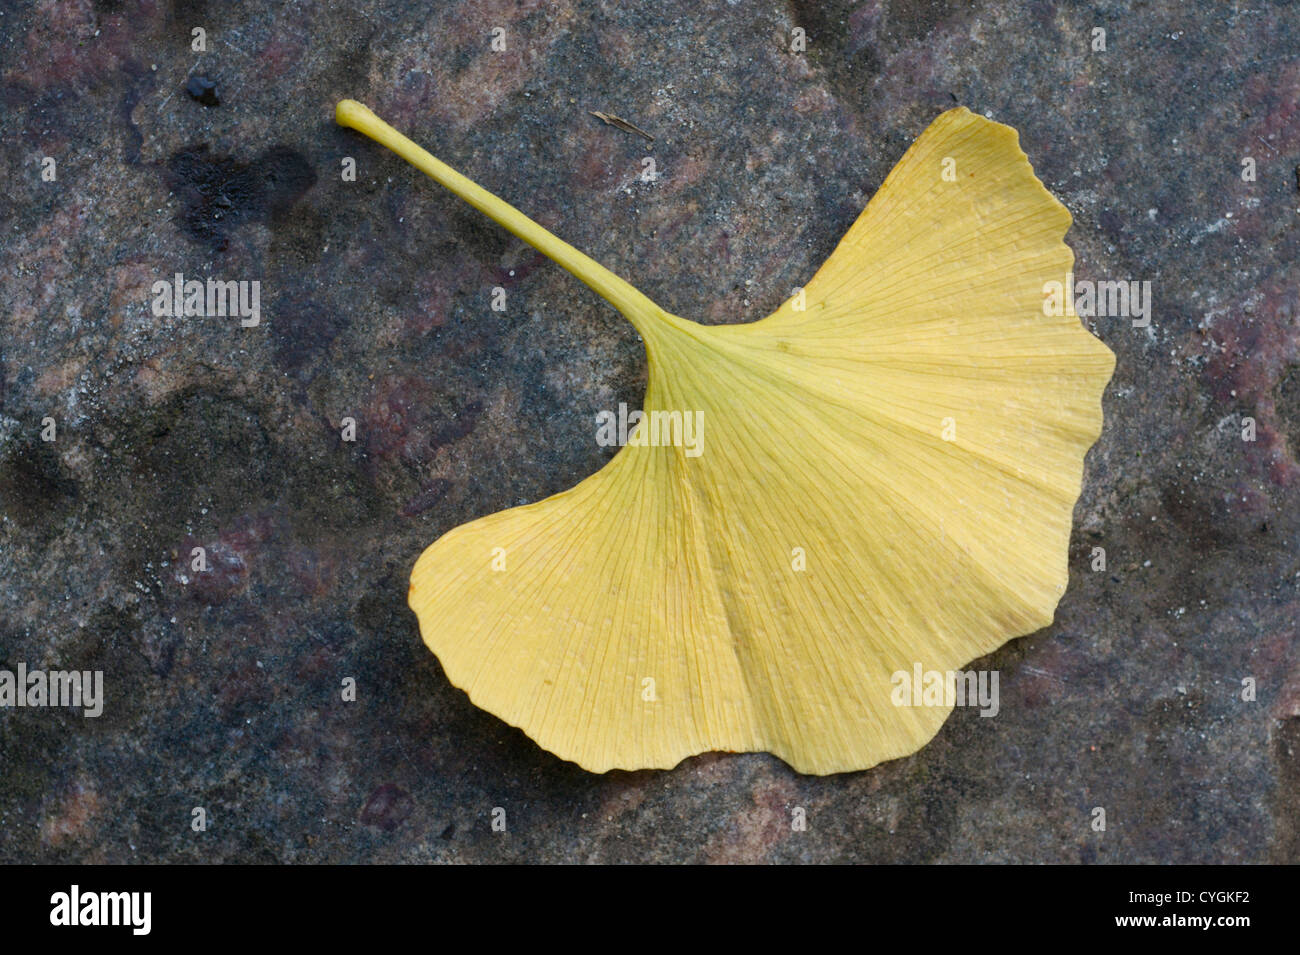 Yellow GIngko Biloba leaf on a rock Stock Photo